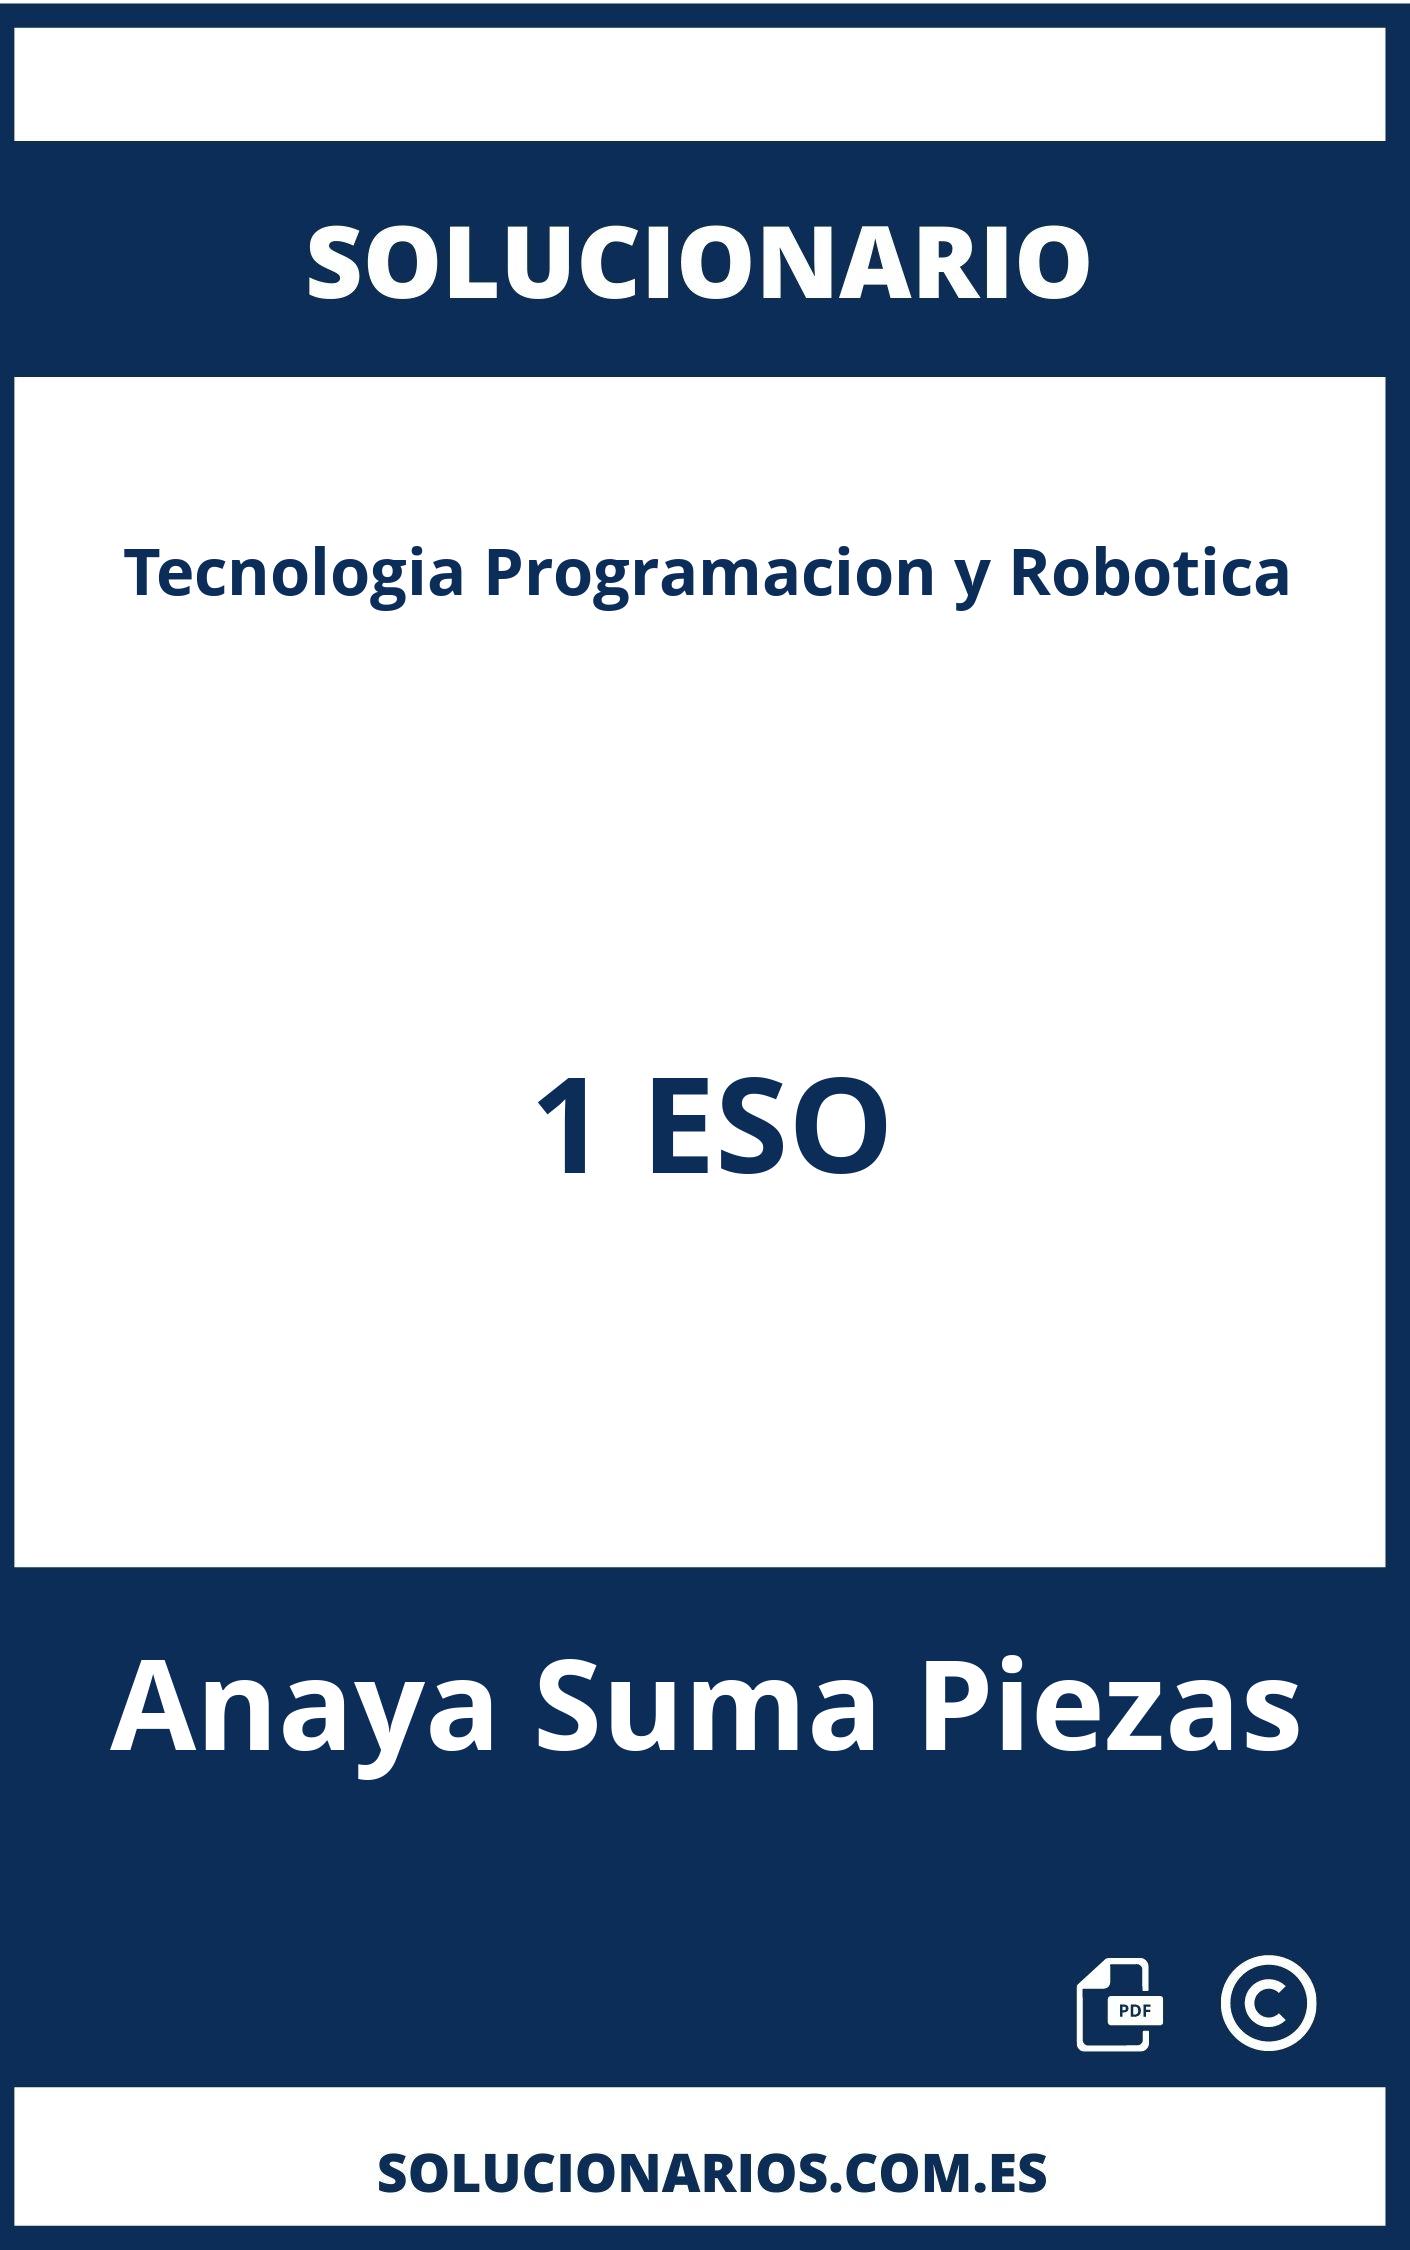 Solucionario Tecnologia Programacion y Robotica 1 ESO Anaya Suma Piezas